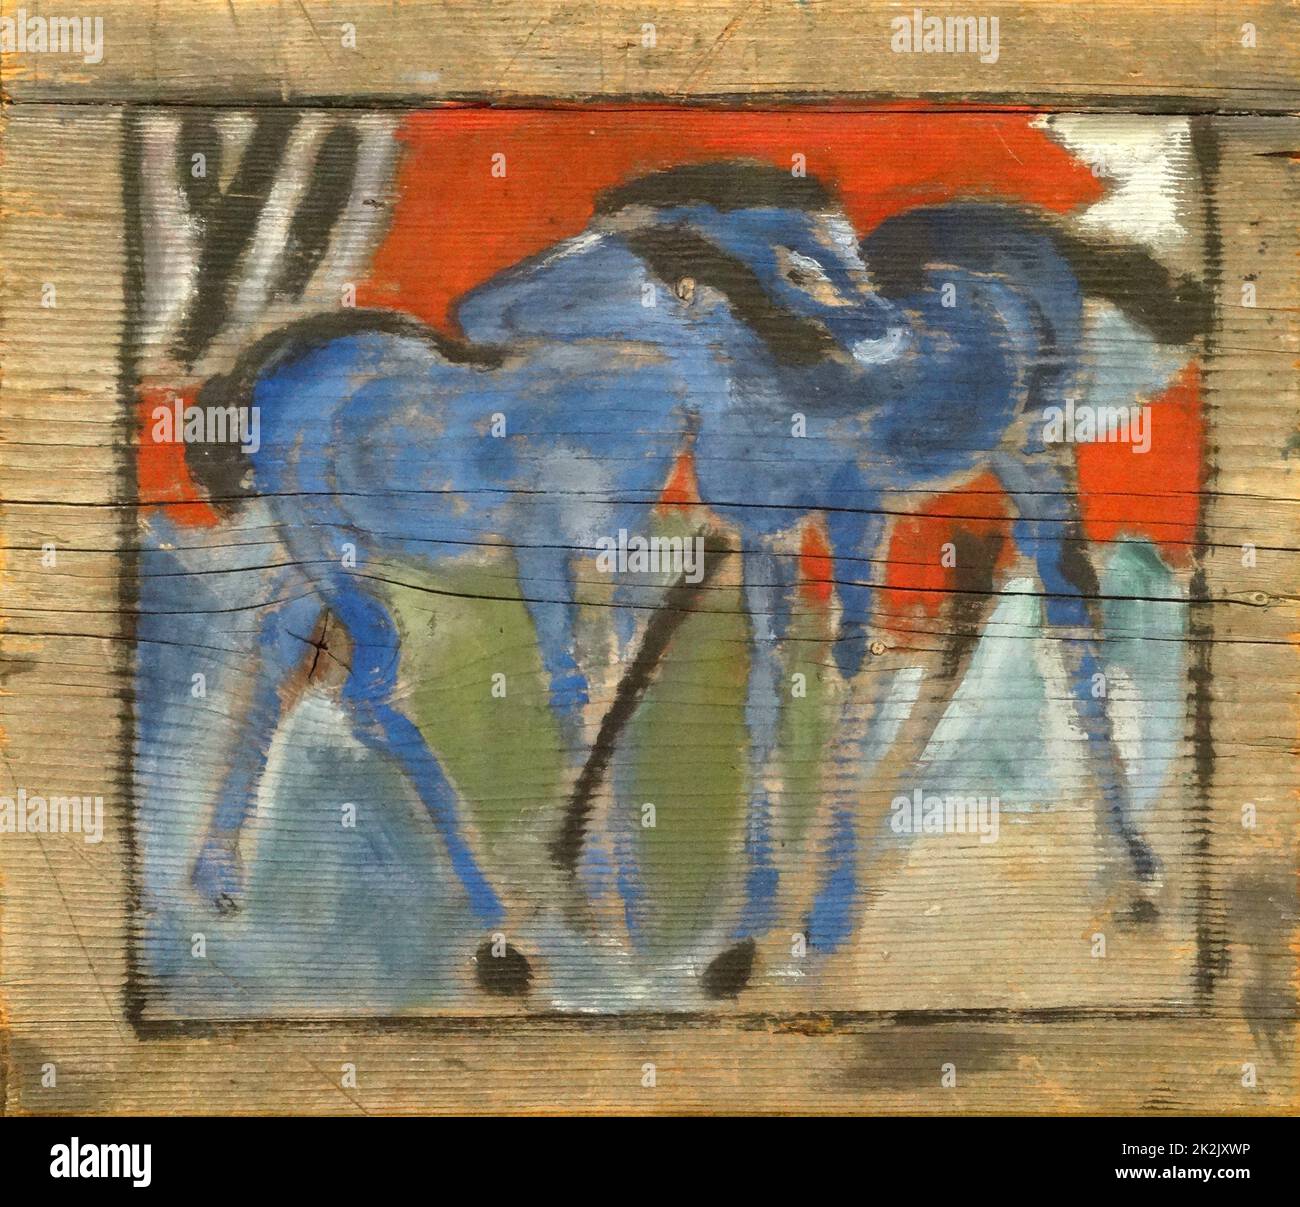 Los potros azul (Imprimir en panel) por Franz Marc (1880-1916), pintor y grabador alemán, una de las figuras clave del movimiento expresionista alemán. Foto de stock